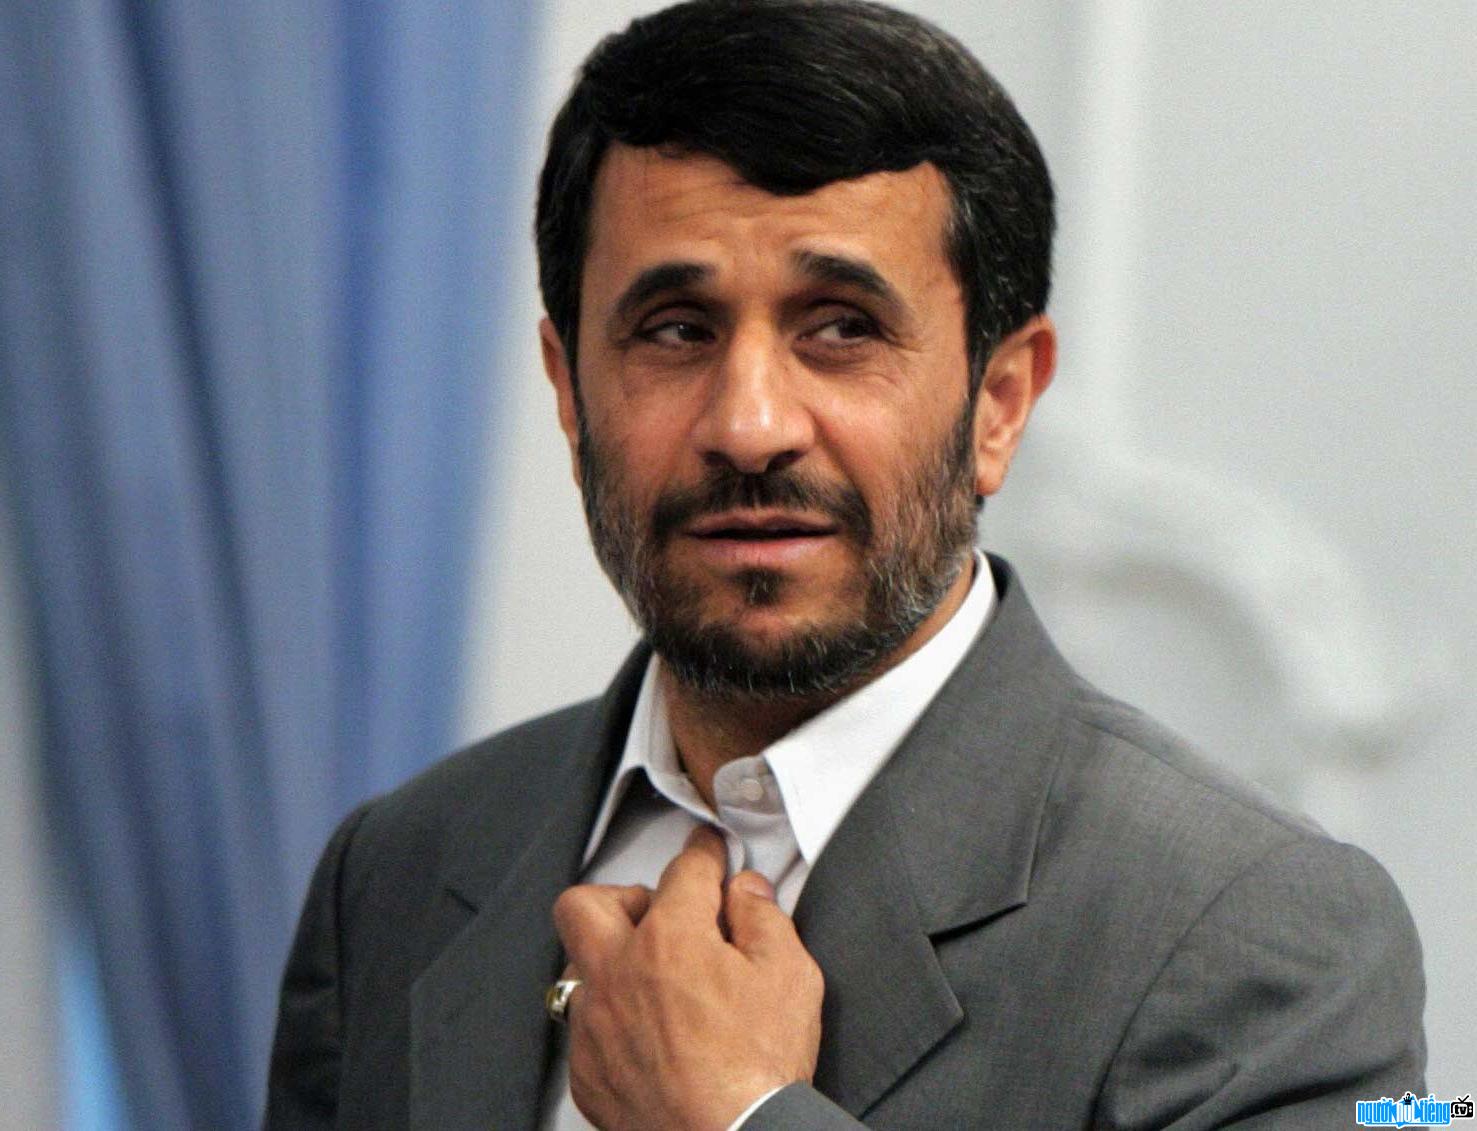 Image of Mahmoud Ahmadinejad